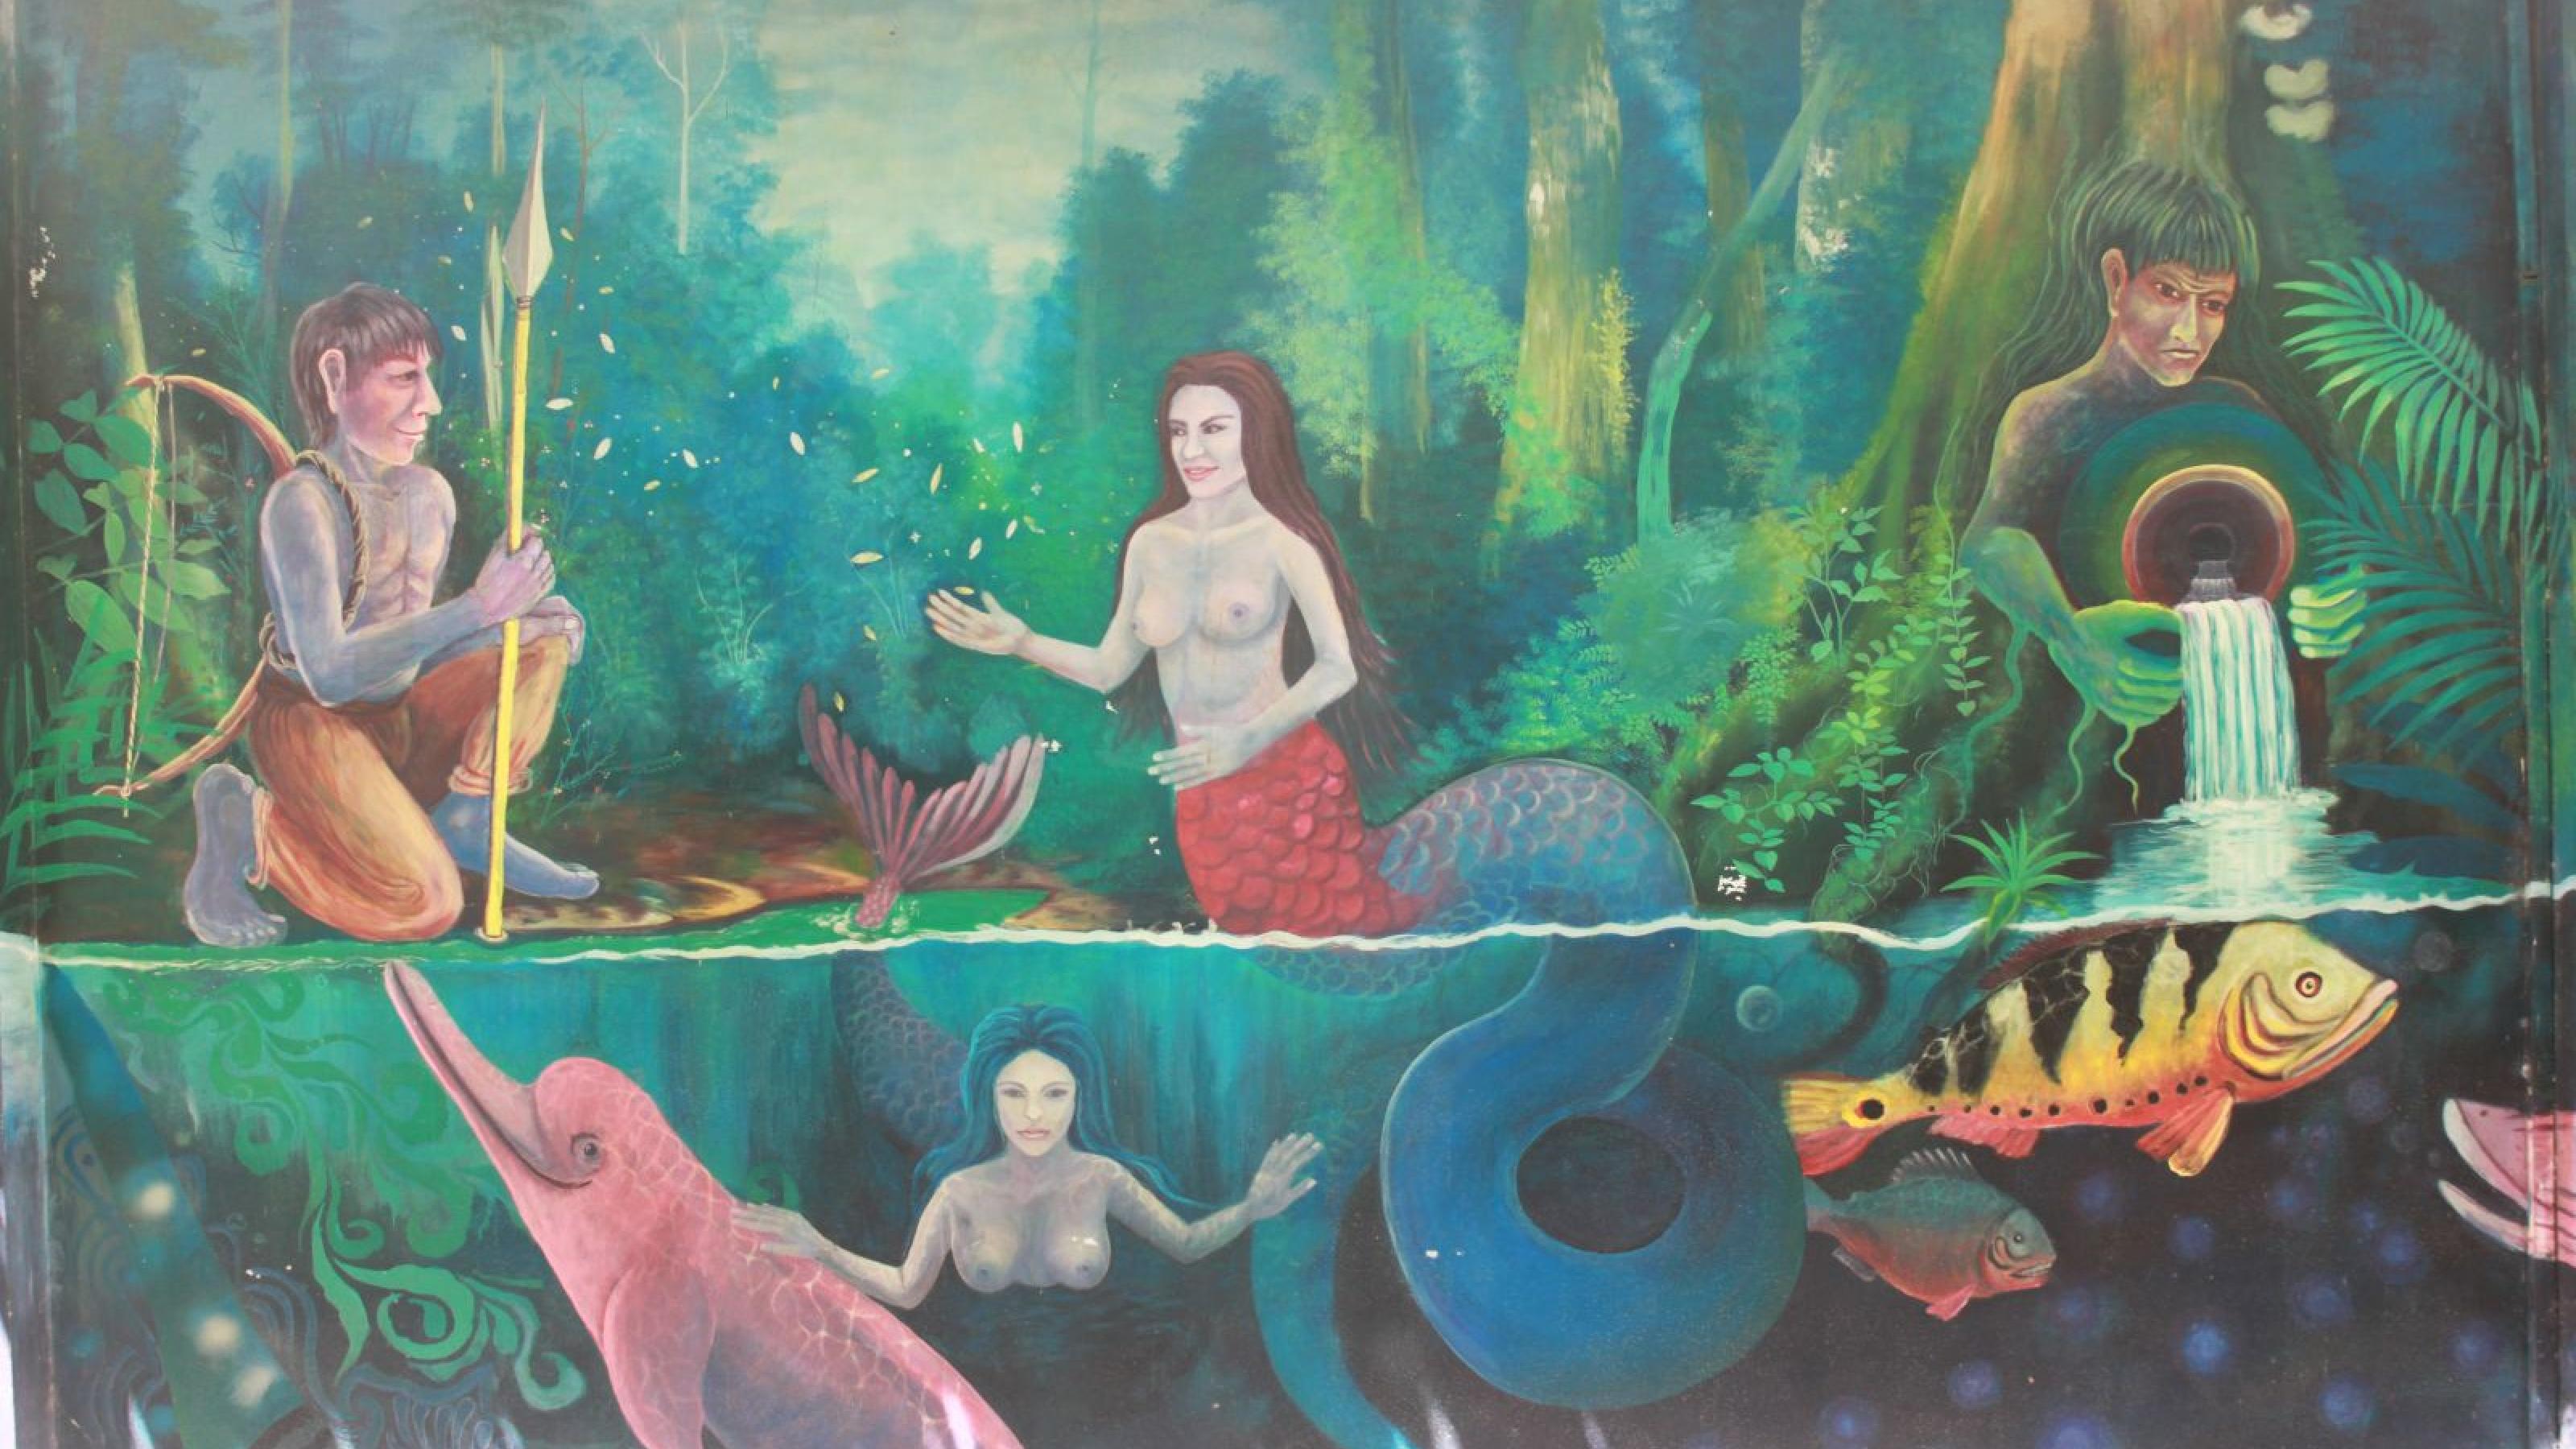 Buntes Wandgemälde, zeigt zwei Männer, einer mit Pfeil und Bogen, und eine Sirene, die ihren kopf über Wasser streckt.  Unter dem Wasser ein rosa Delphin, eine Boa und der Fischkörper der Sirene.